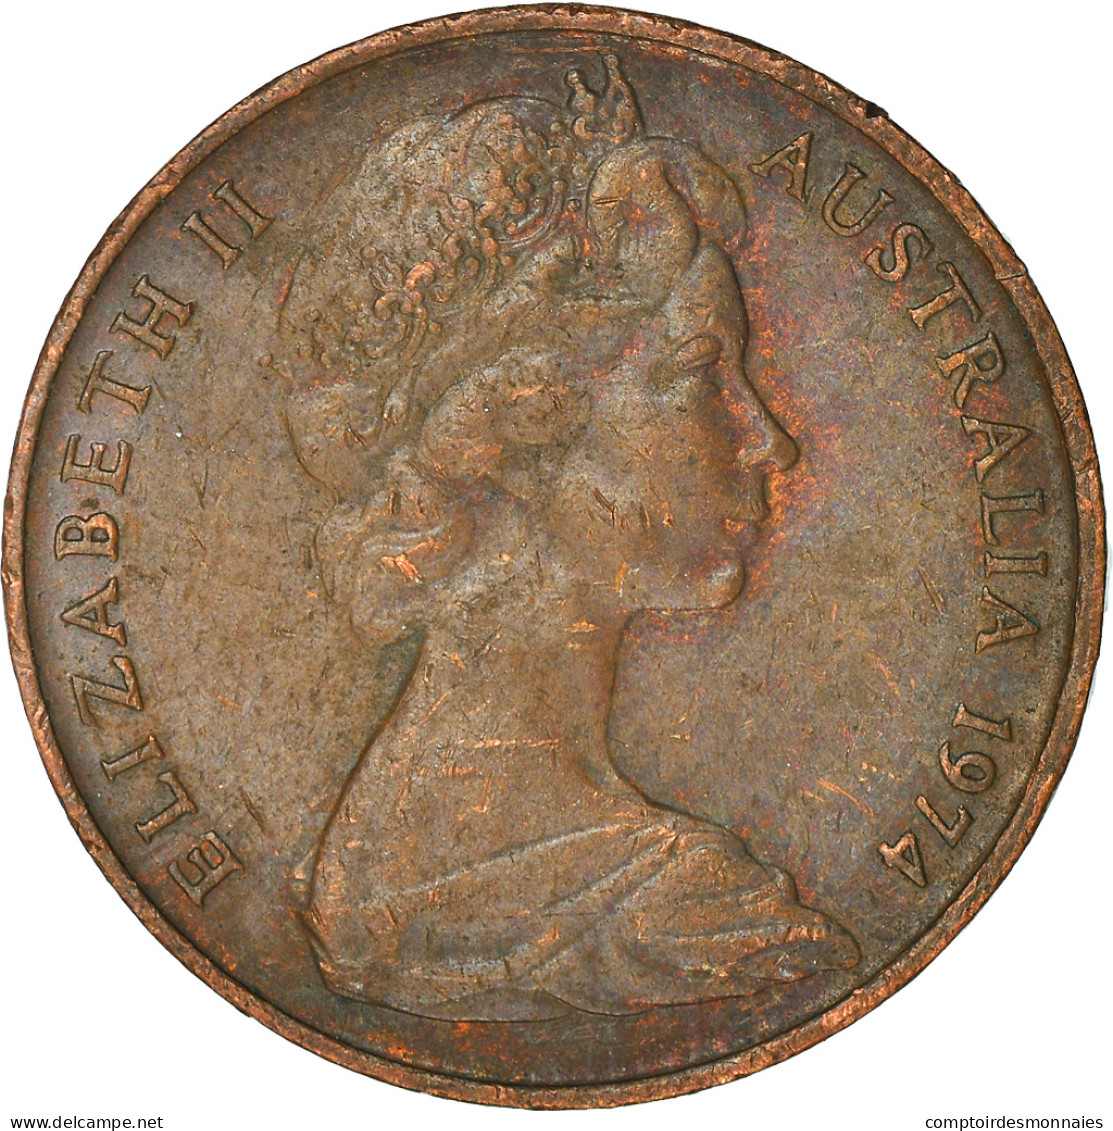 Monnaie, Australie, Elizabeth II, 2 Cents, 1974, TTB, Bronze, KM:63 - 2 Cents